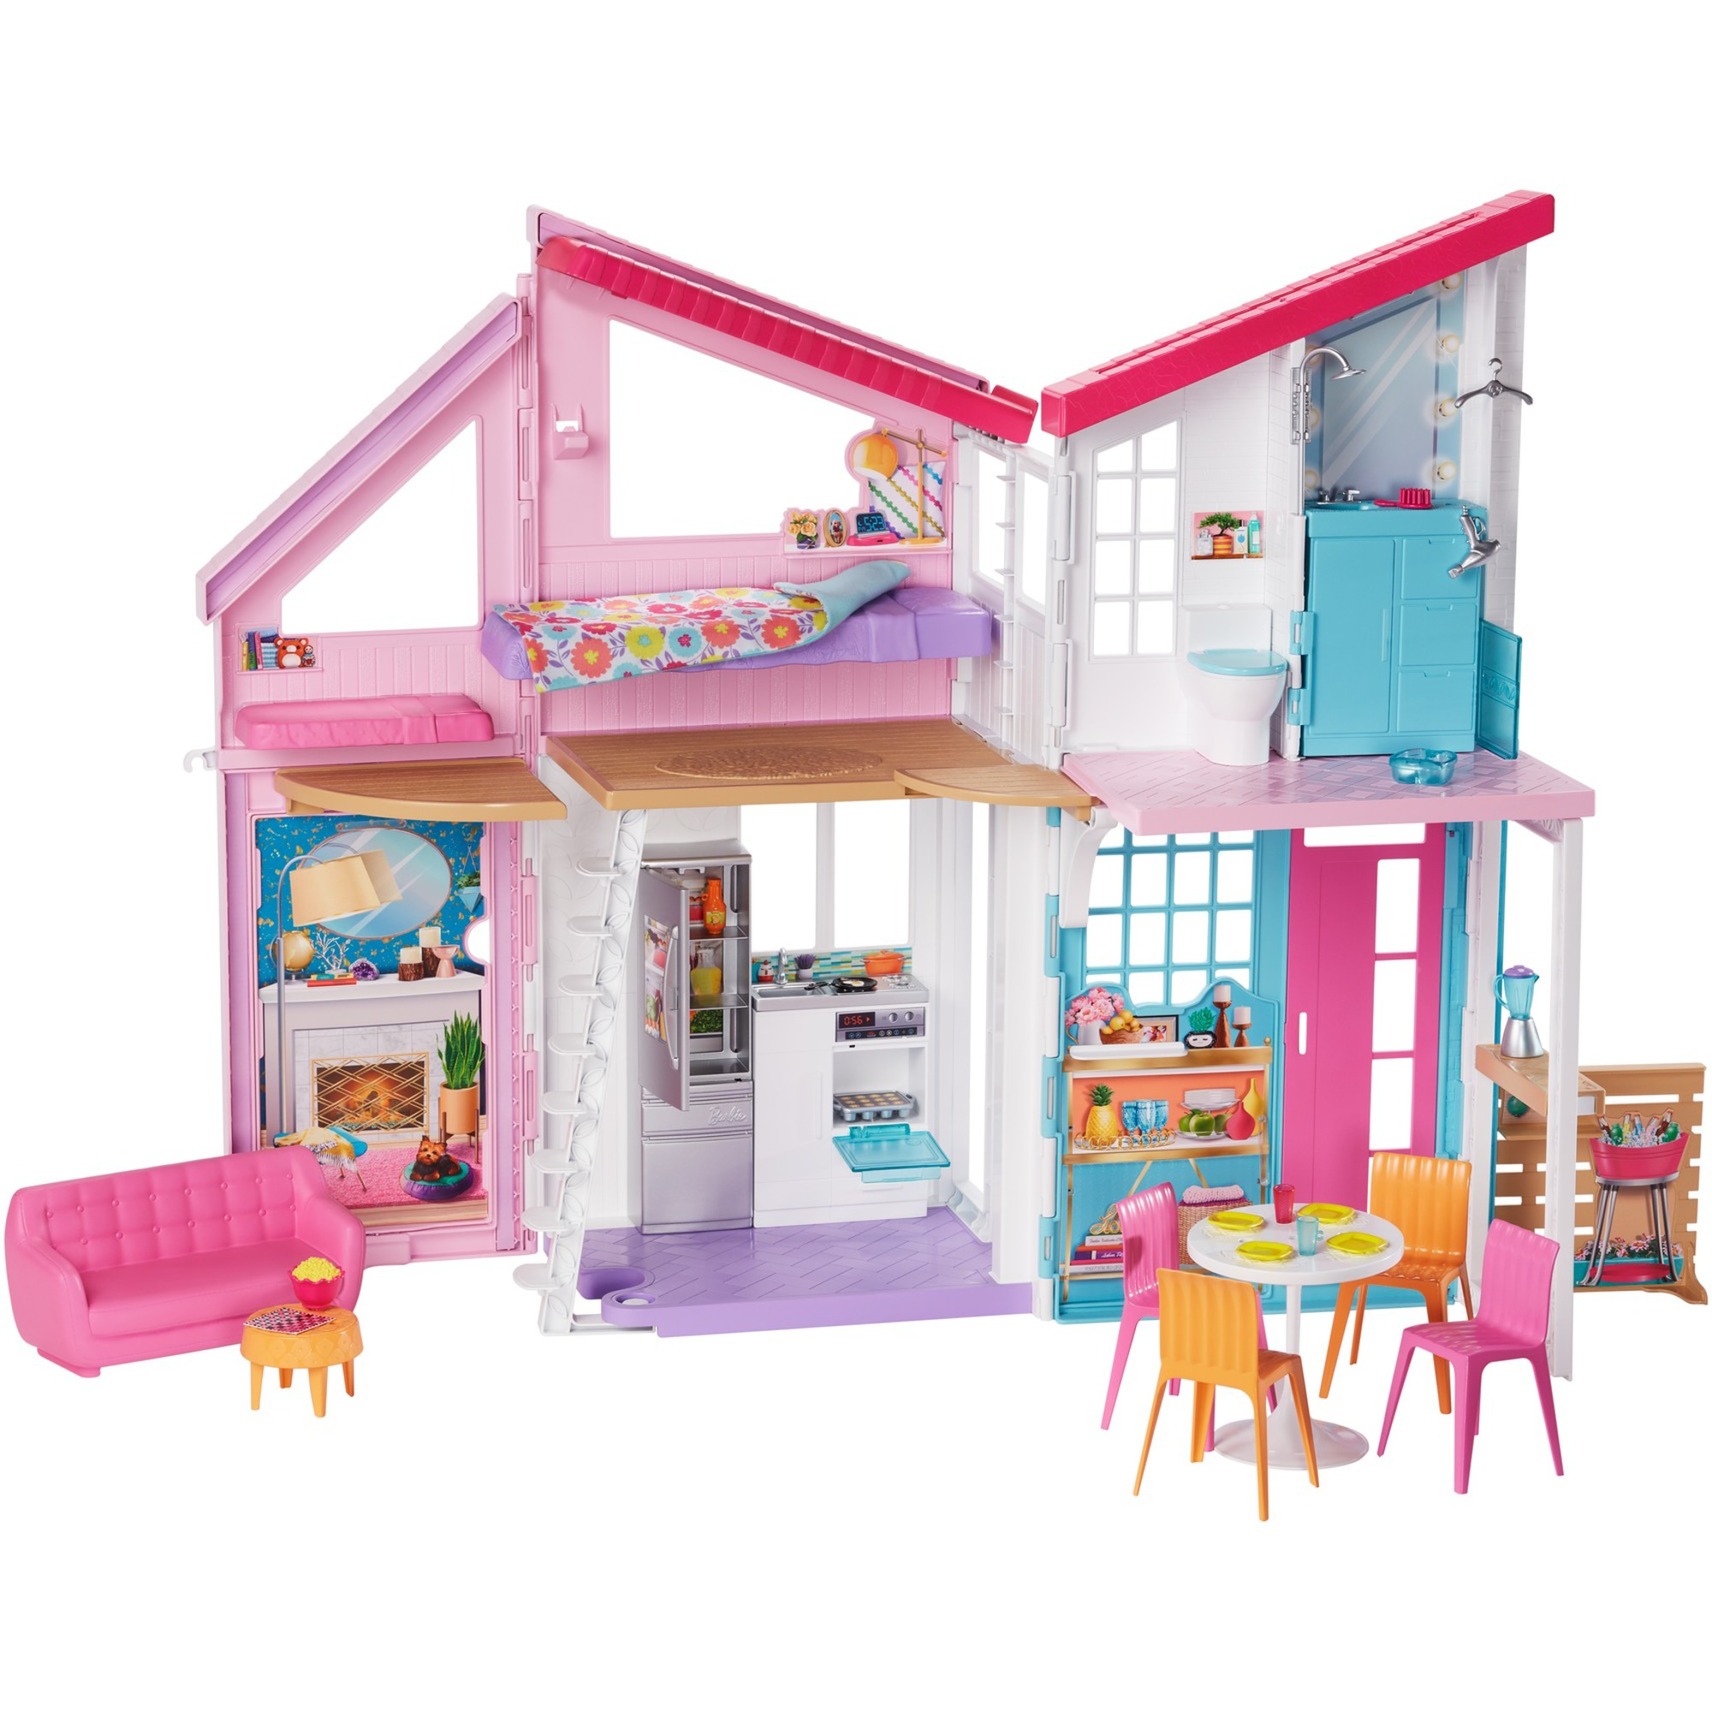 Spielzeug: Mattel Barbie Malibu Haus, Spielgebäude